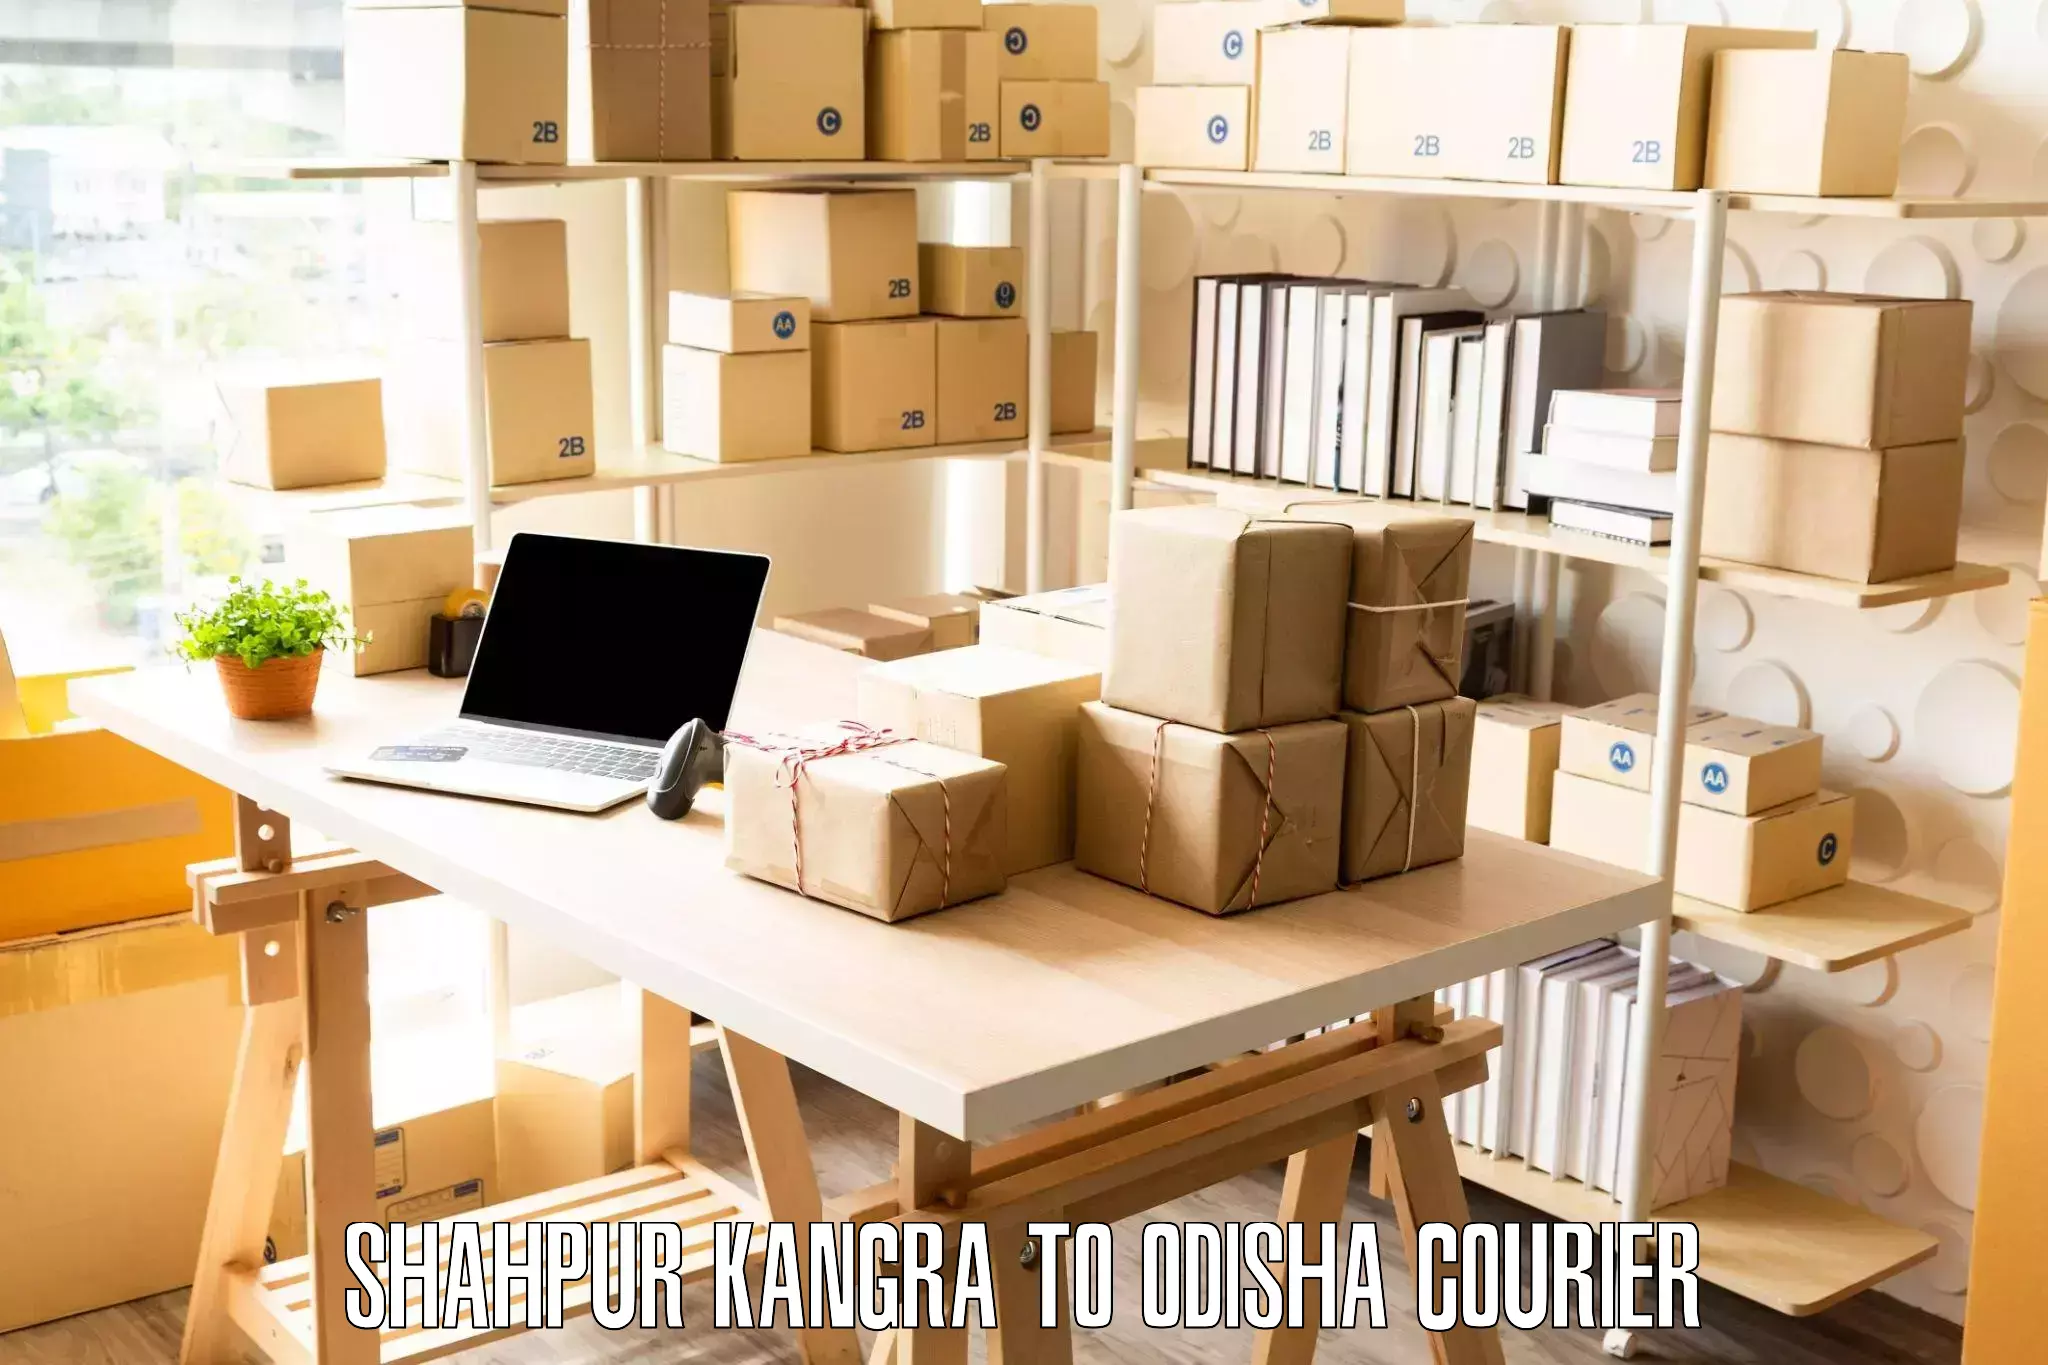 Local furniture movers Shahpur Kangra to Odisha